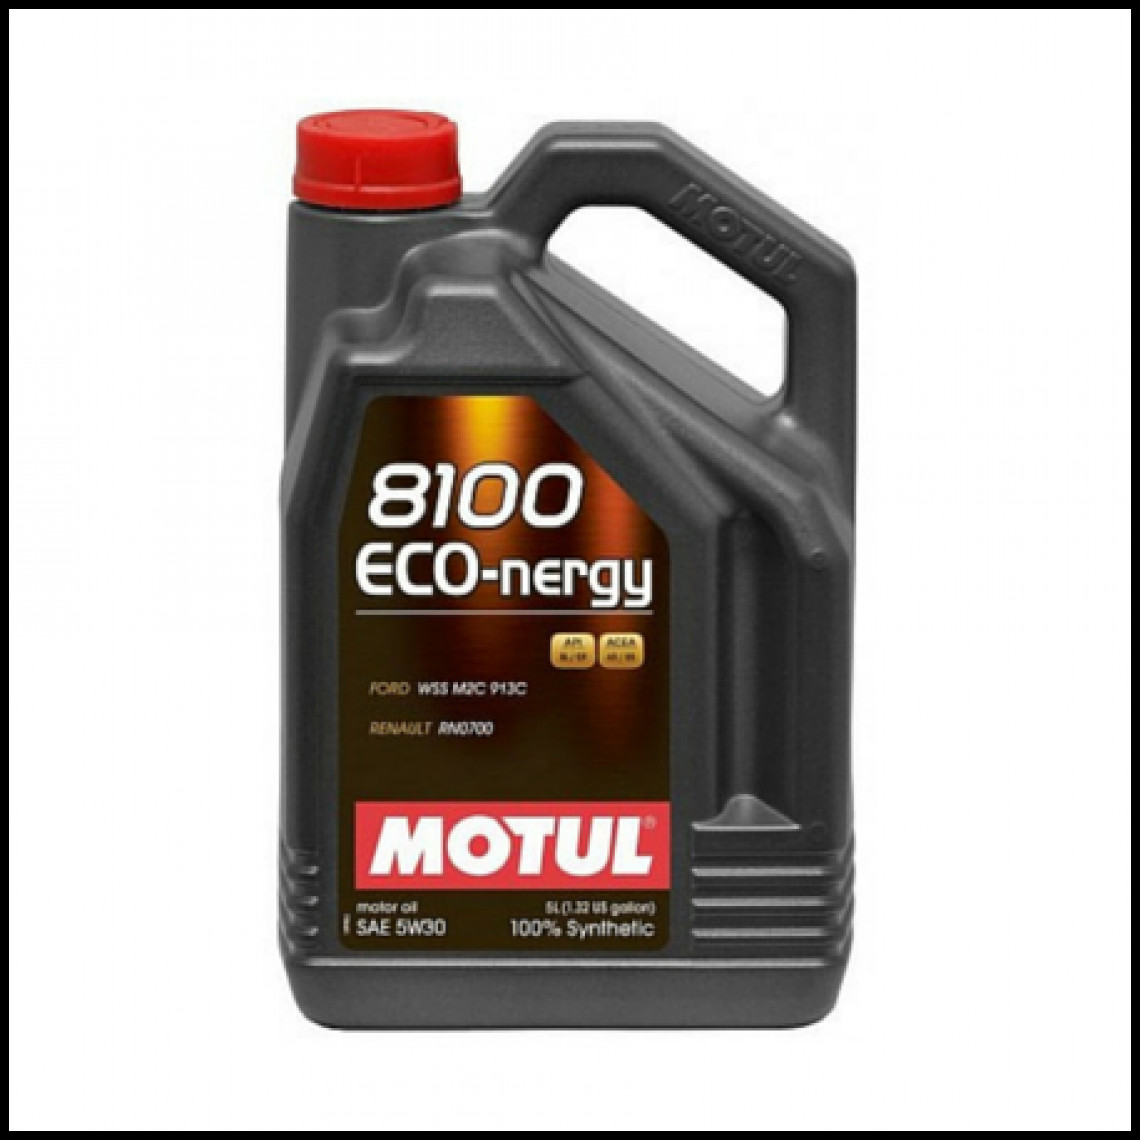 Motul - Huile ECO-NERGY 8100 5W30 5L - Consommables pour outillage motorisé